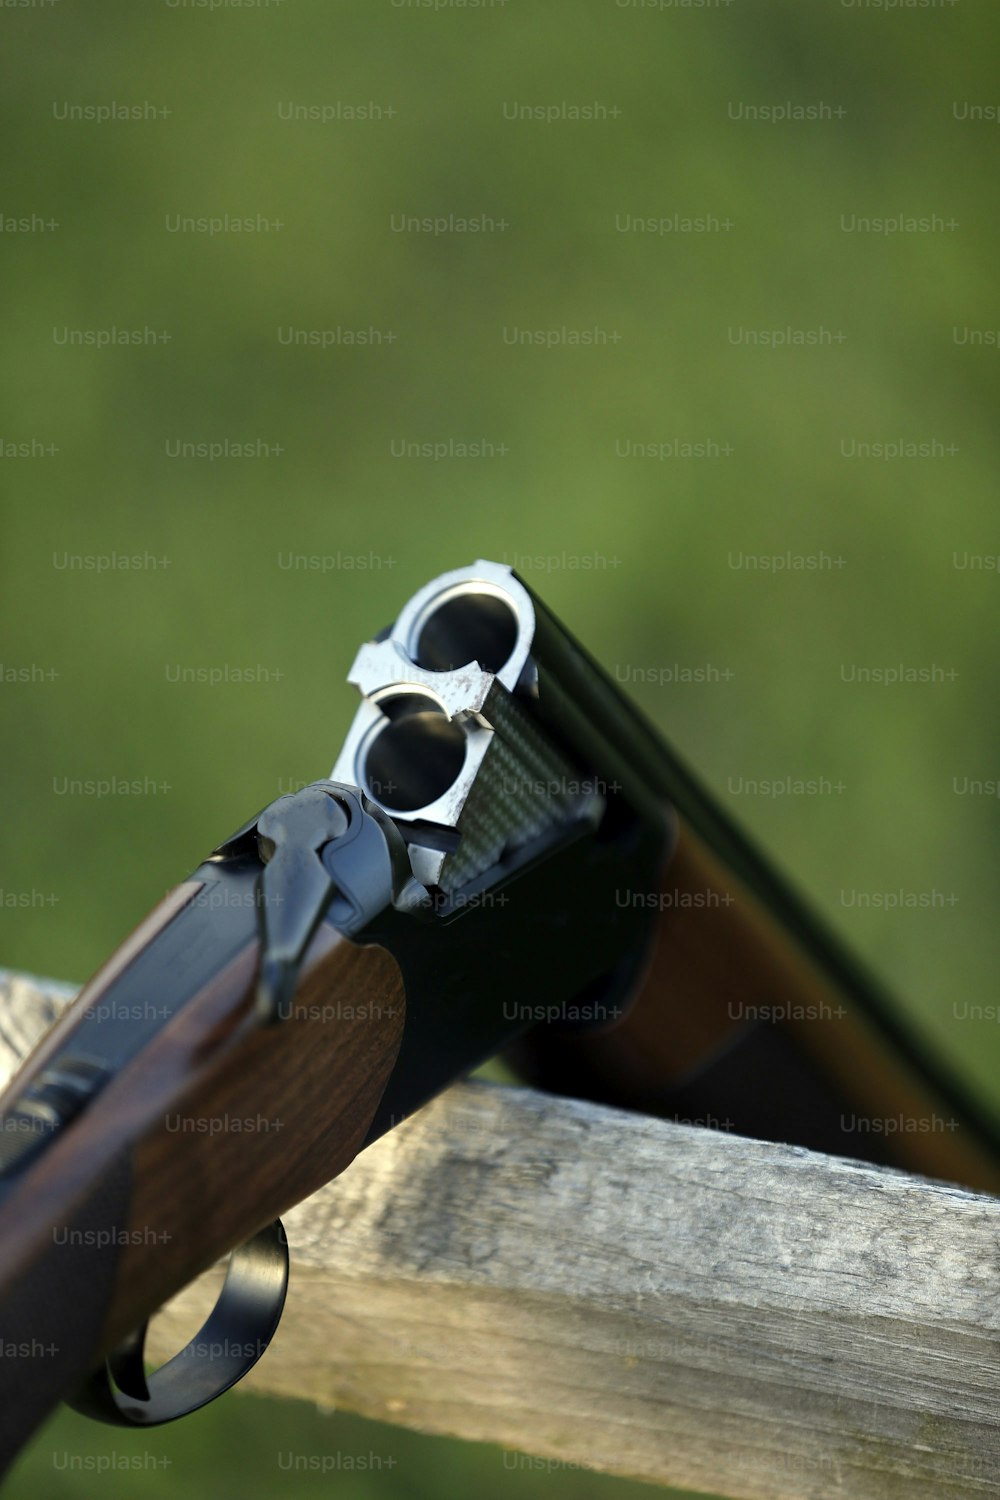 a close up of a gun on a wooden rail